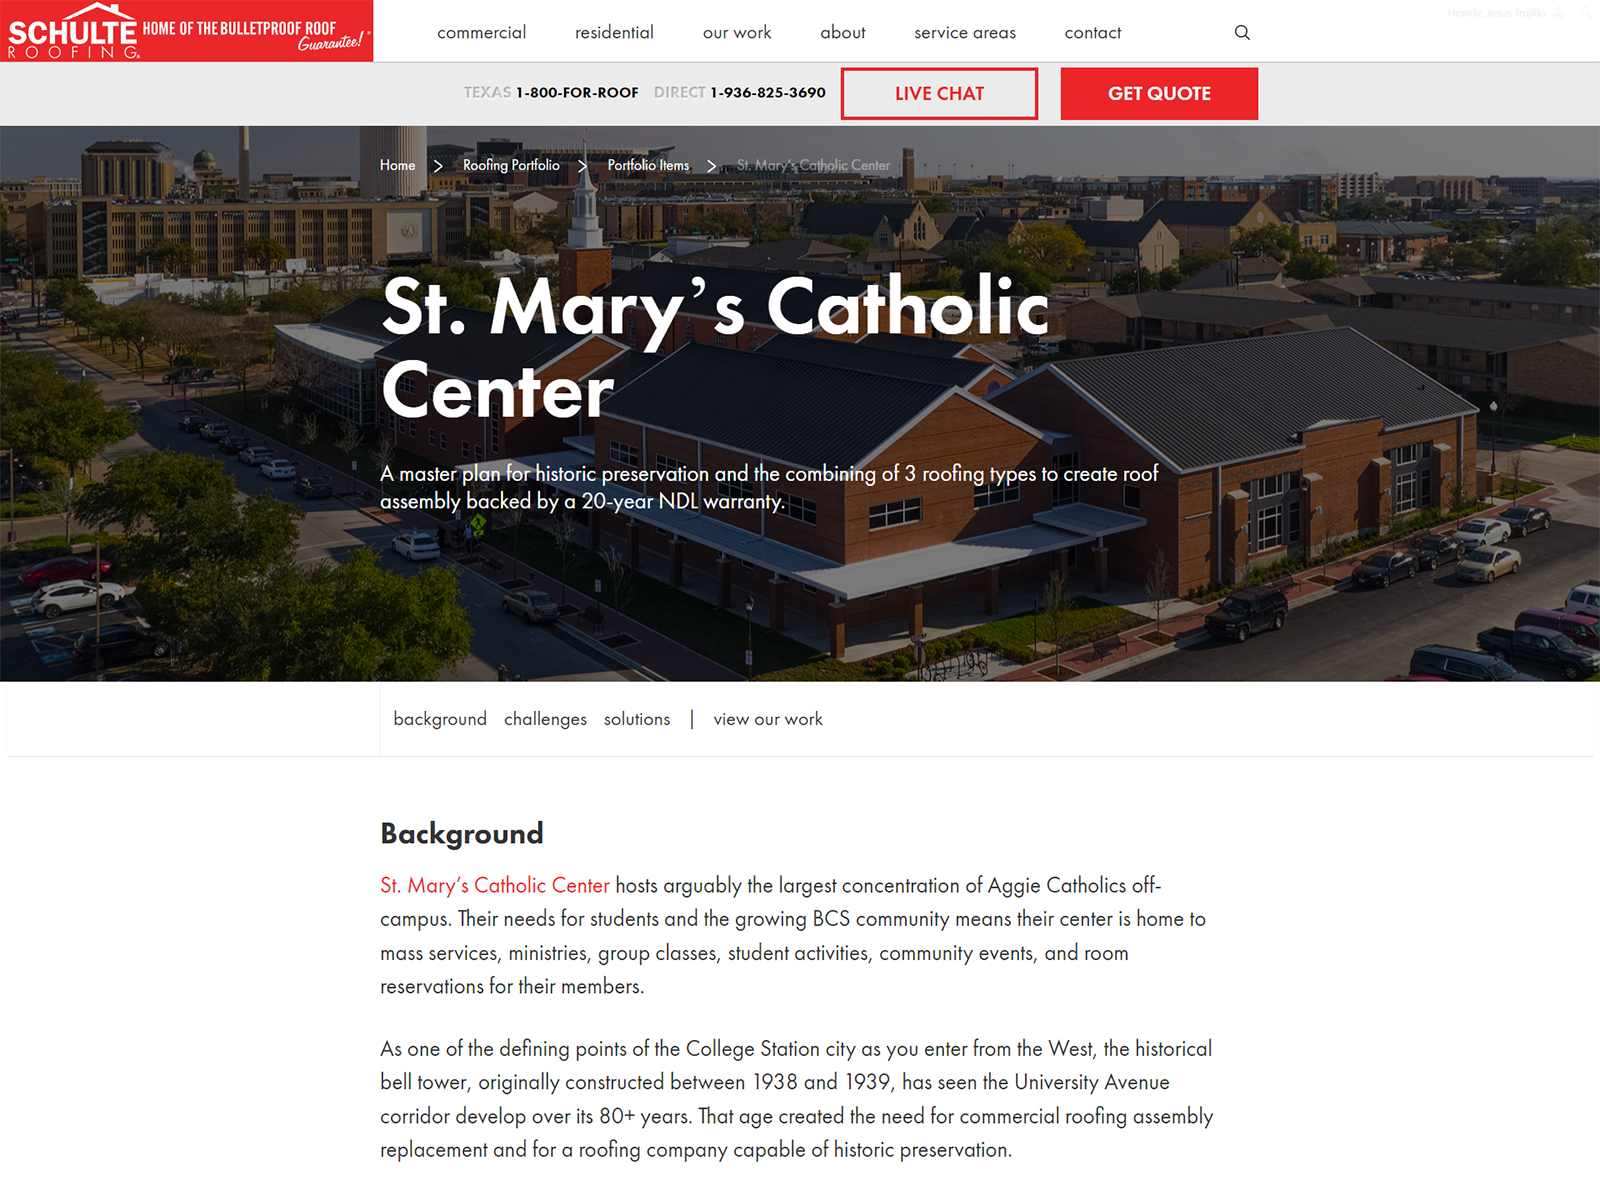 St. Mary’s Catholic Center Case Study